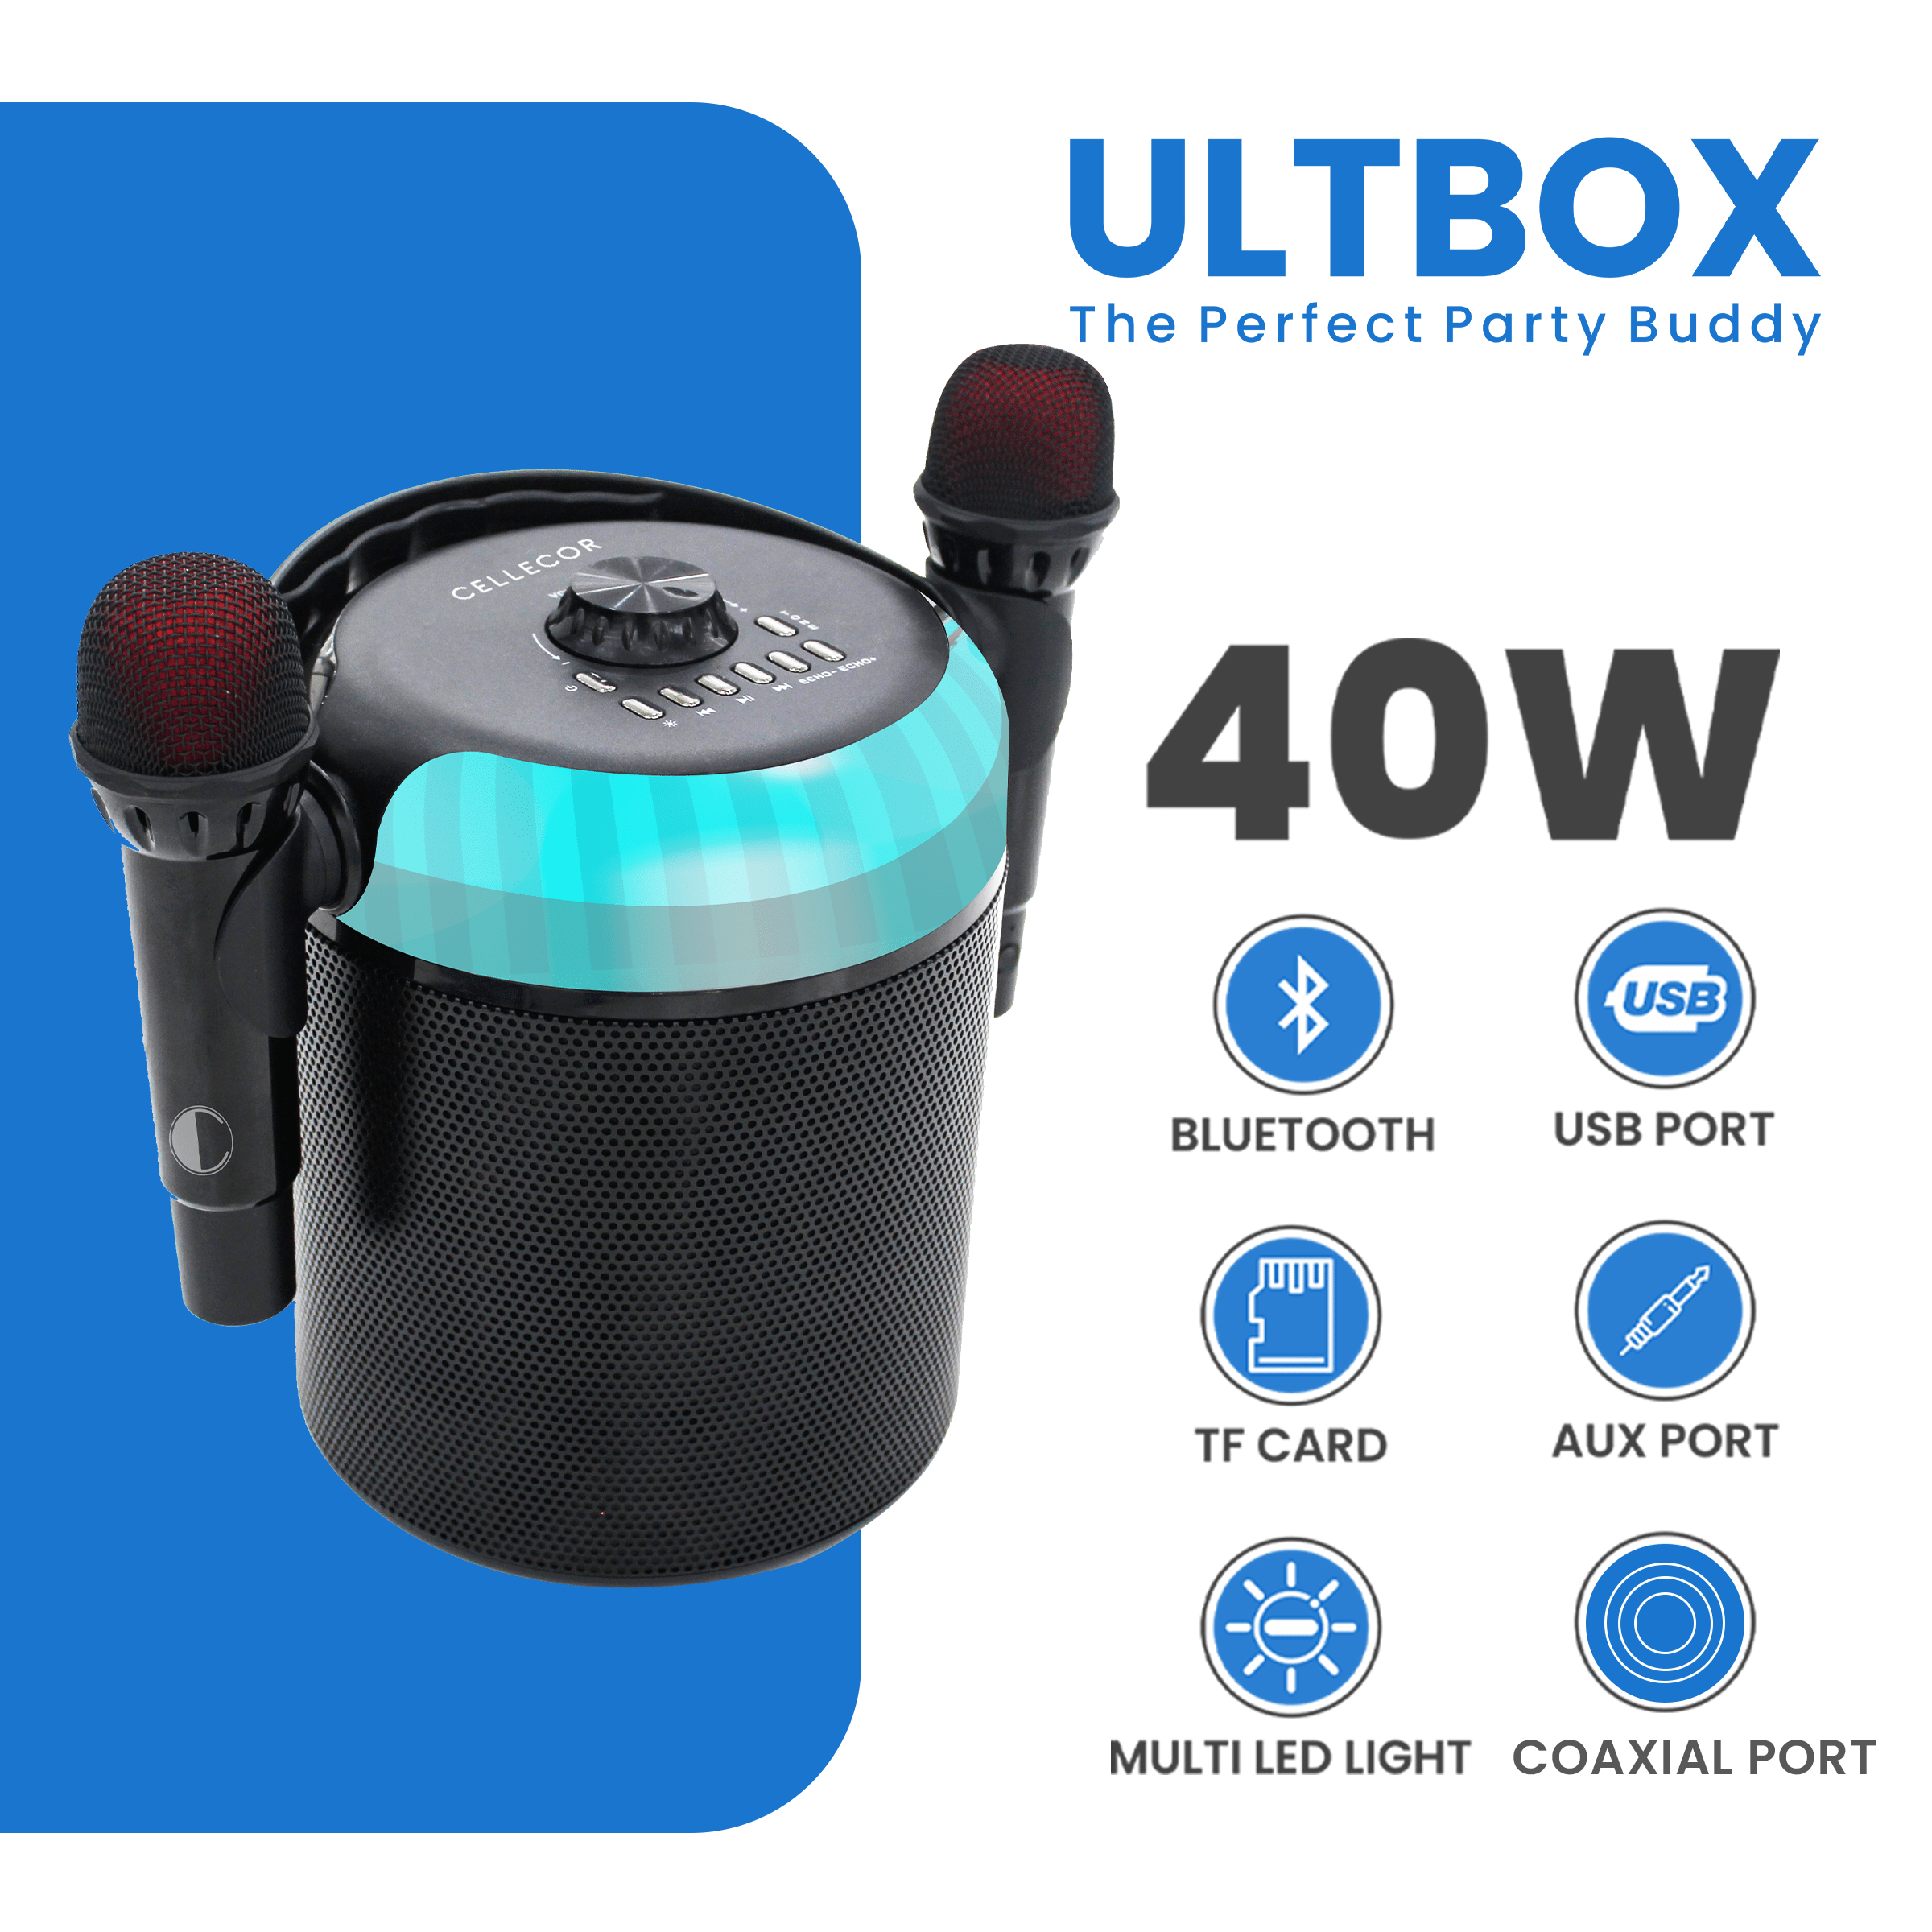 Cellecor Speaker UltraBox| dual karaoke mic| bluetooth speaker| wireless speaker| 40w usb port | TF card | coaxial port| multi led light